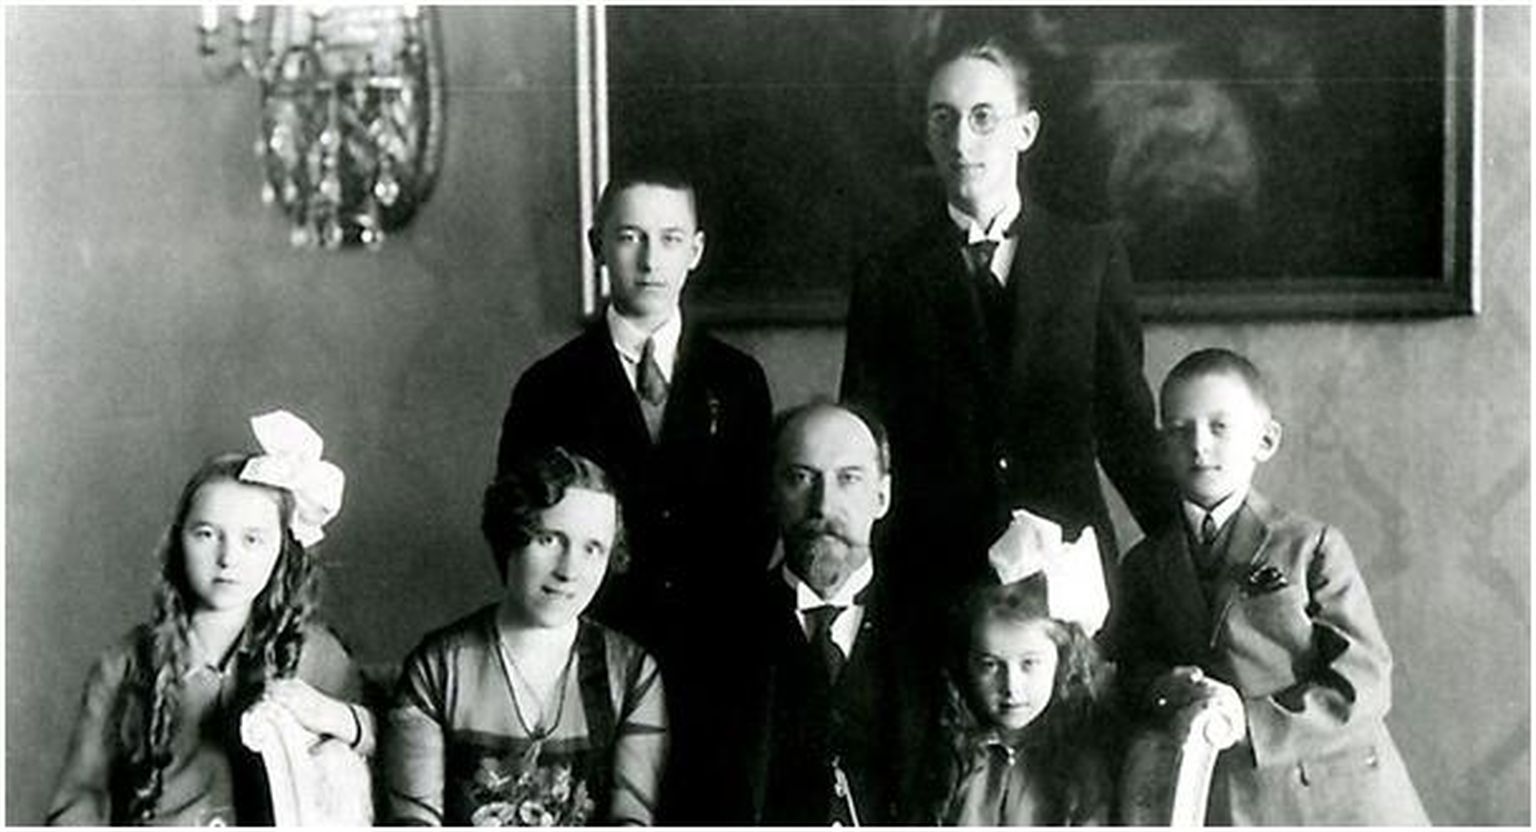 Jaan Tõnisson abikaasa ja lastega 1928. aastal. Istuvad tütar Hilja, Hilda Tõnisson, Jaan Tõnisson ja tütar Lagle, seisavad pojad Heldur, Ilmar ja Lembit-Rein.